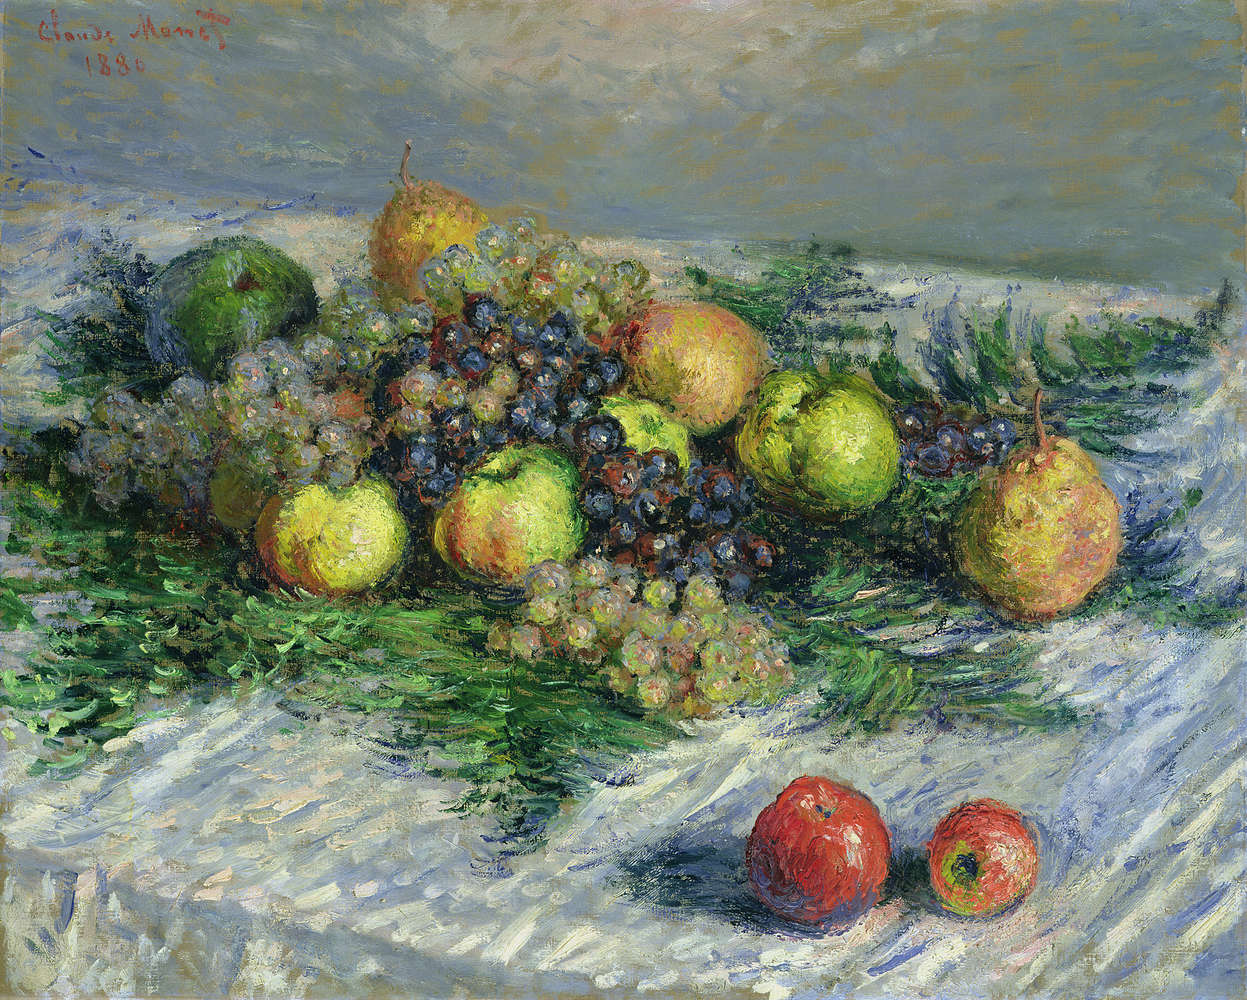             Natura morta con pere e uva" murale di Claude Monet
        